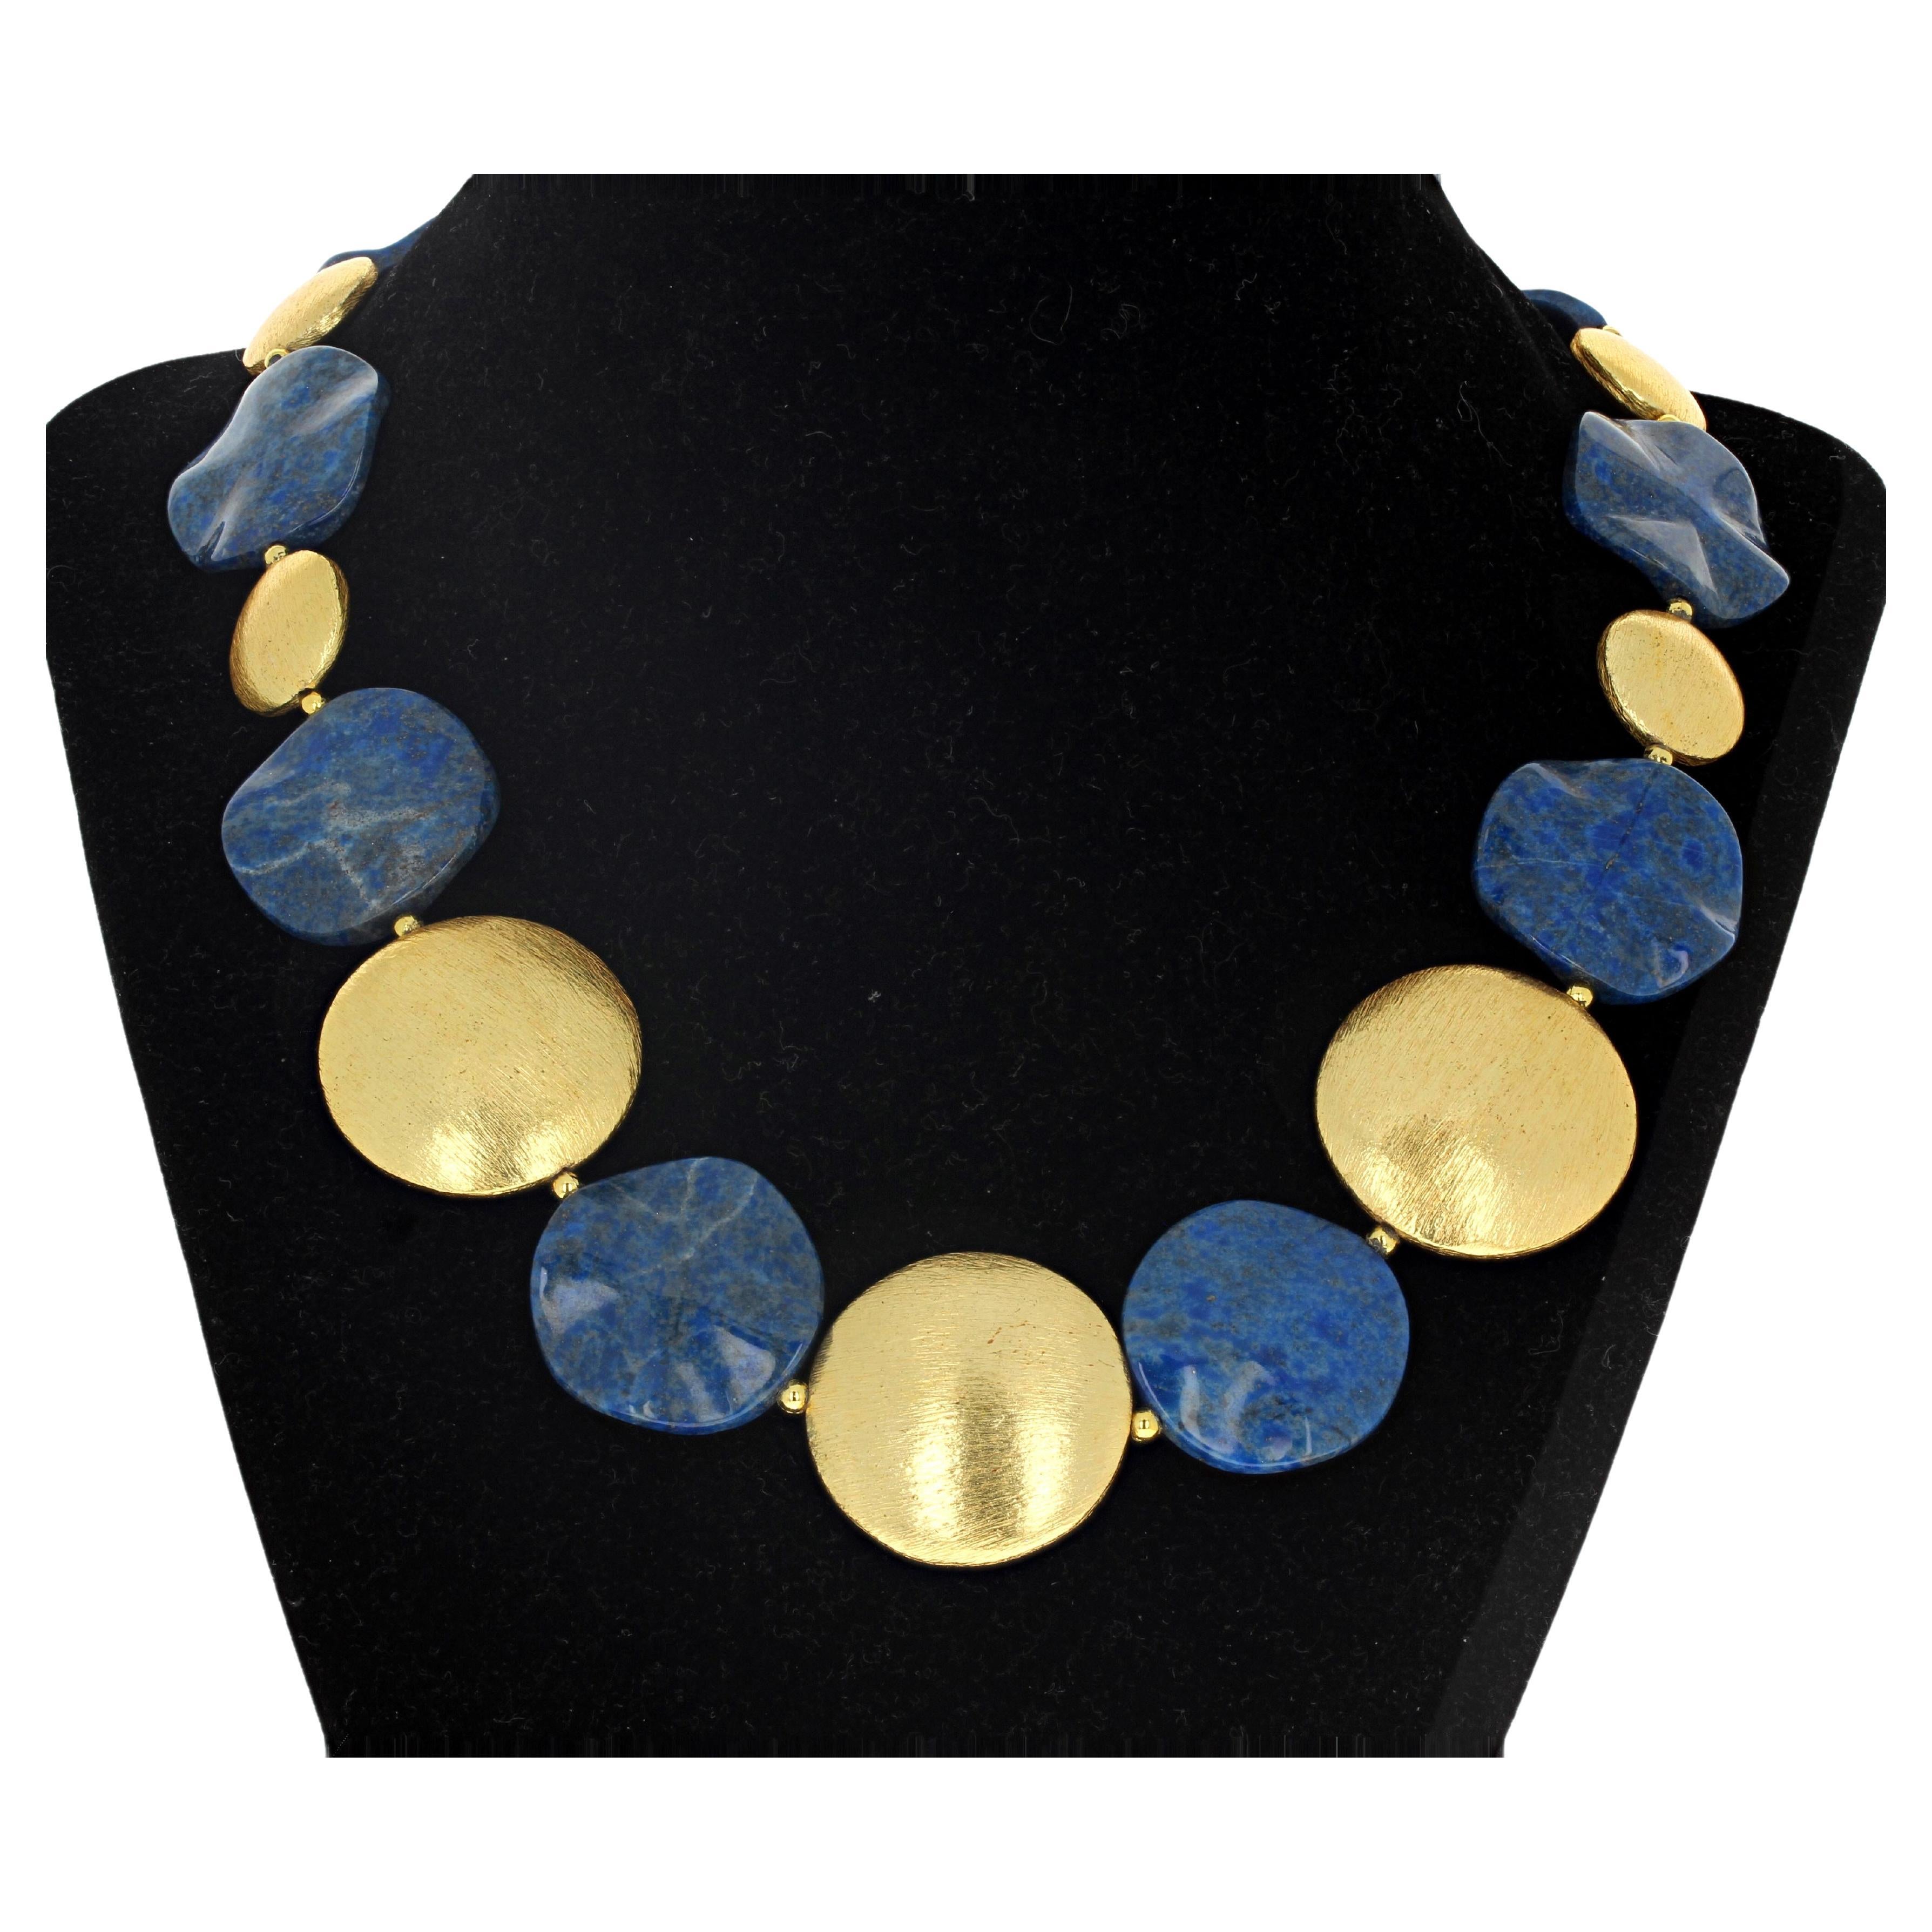 Halskette von AJD, Gold, glänzender natürlicher Lapislazuli und großer goldener Rondels